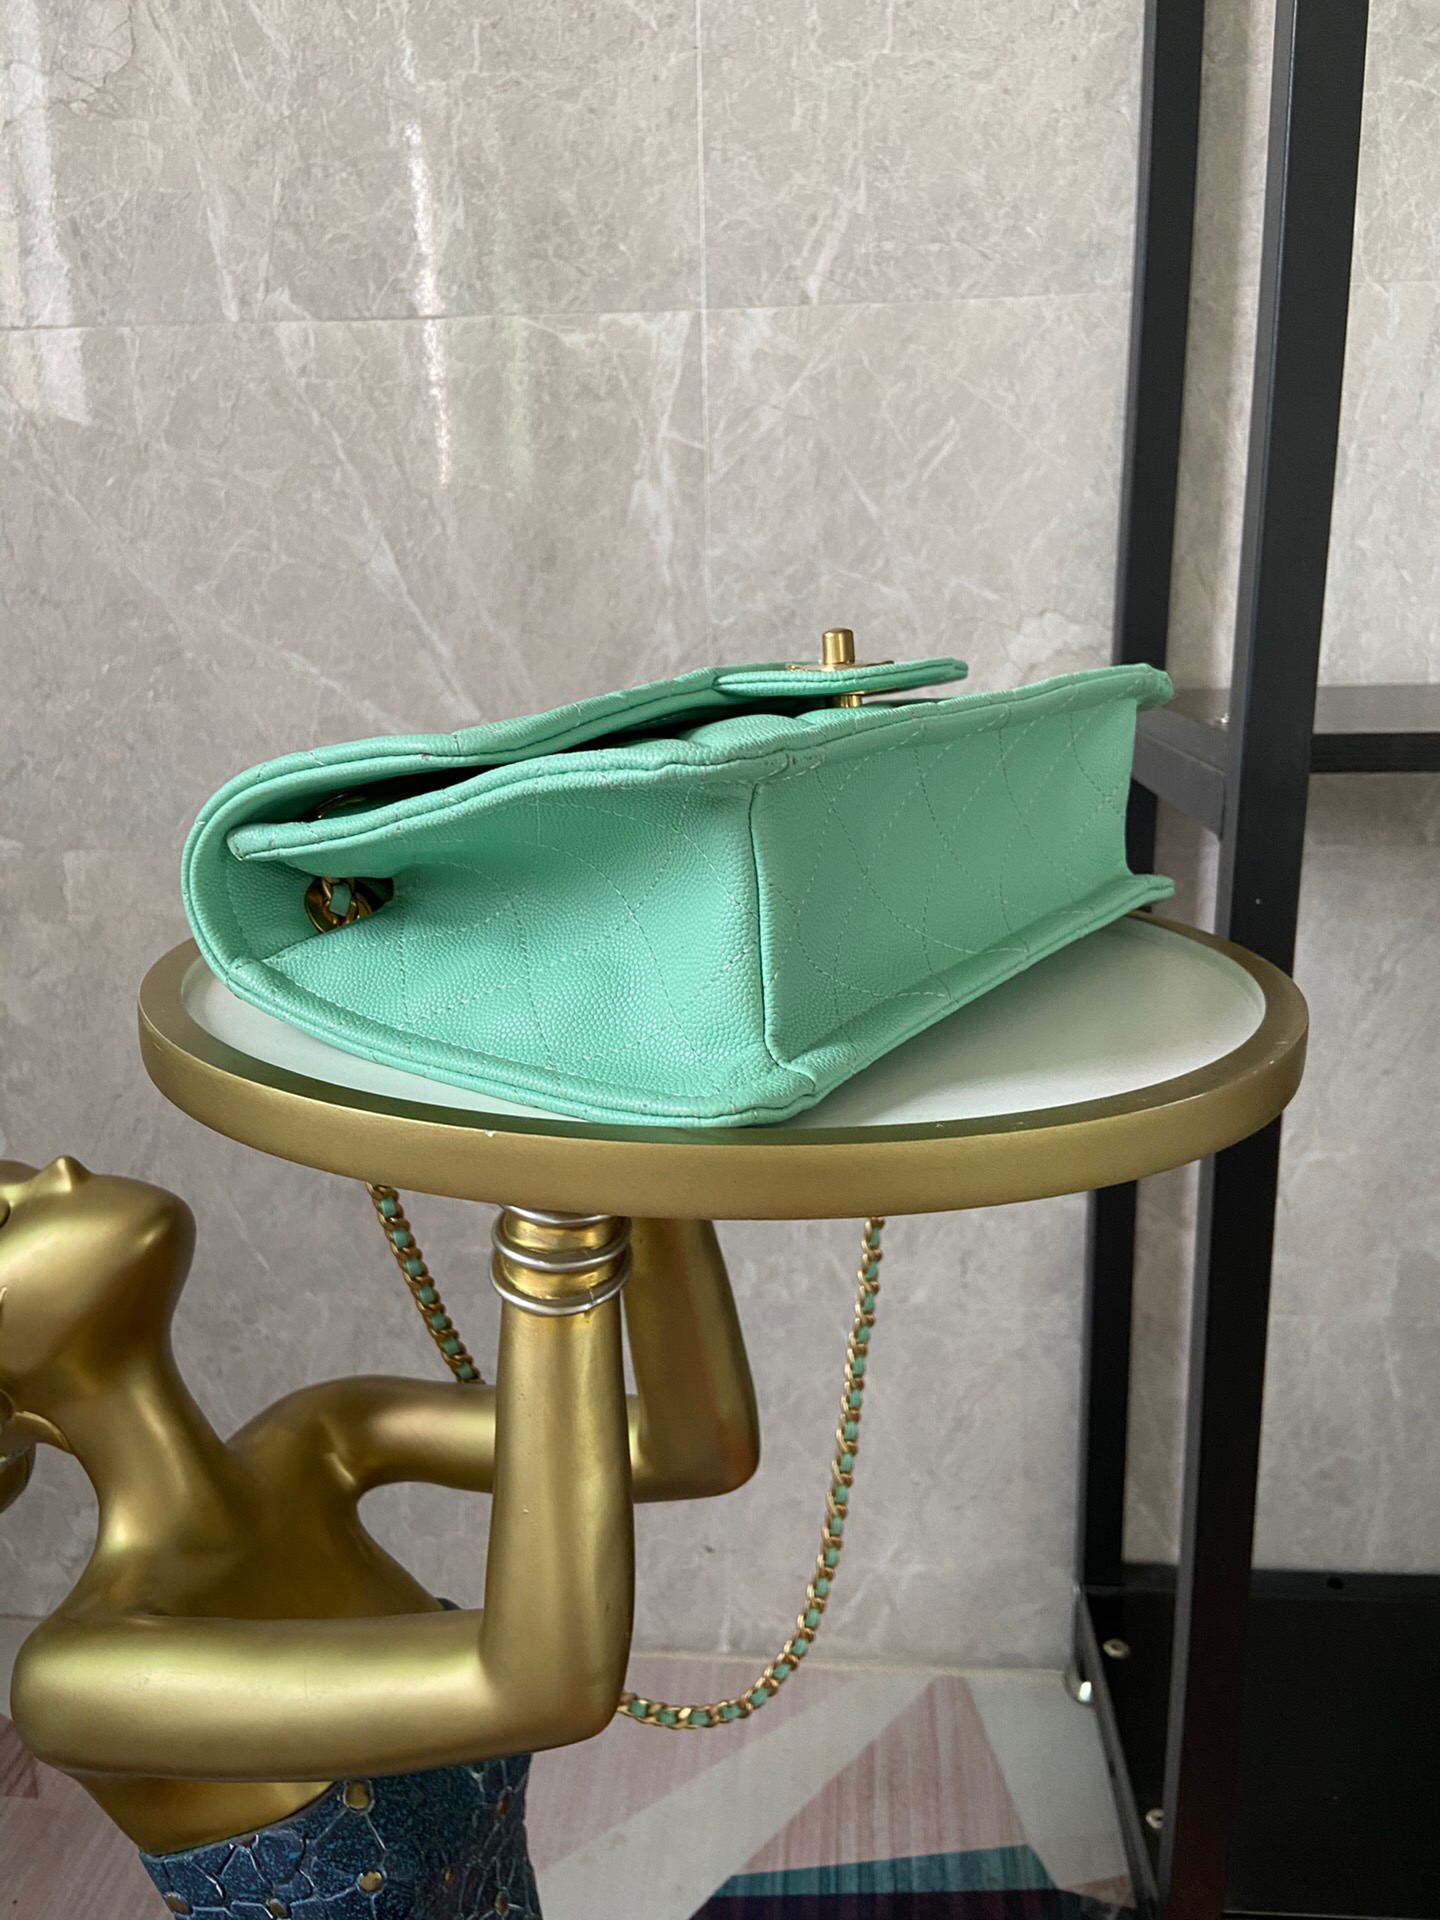 Chanel flap bag Grained Calfskin AS2357 light green